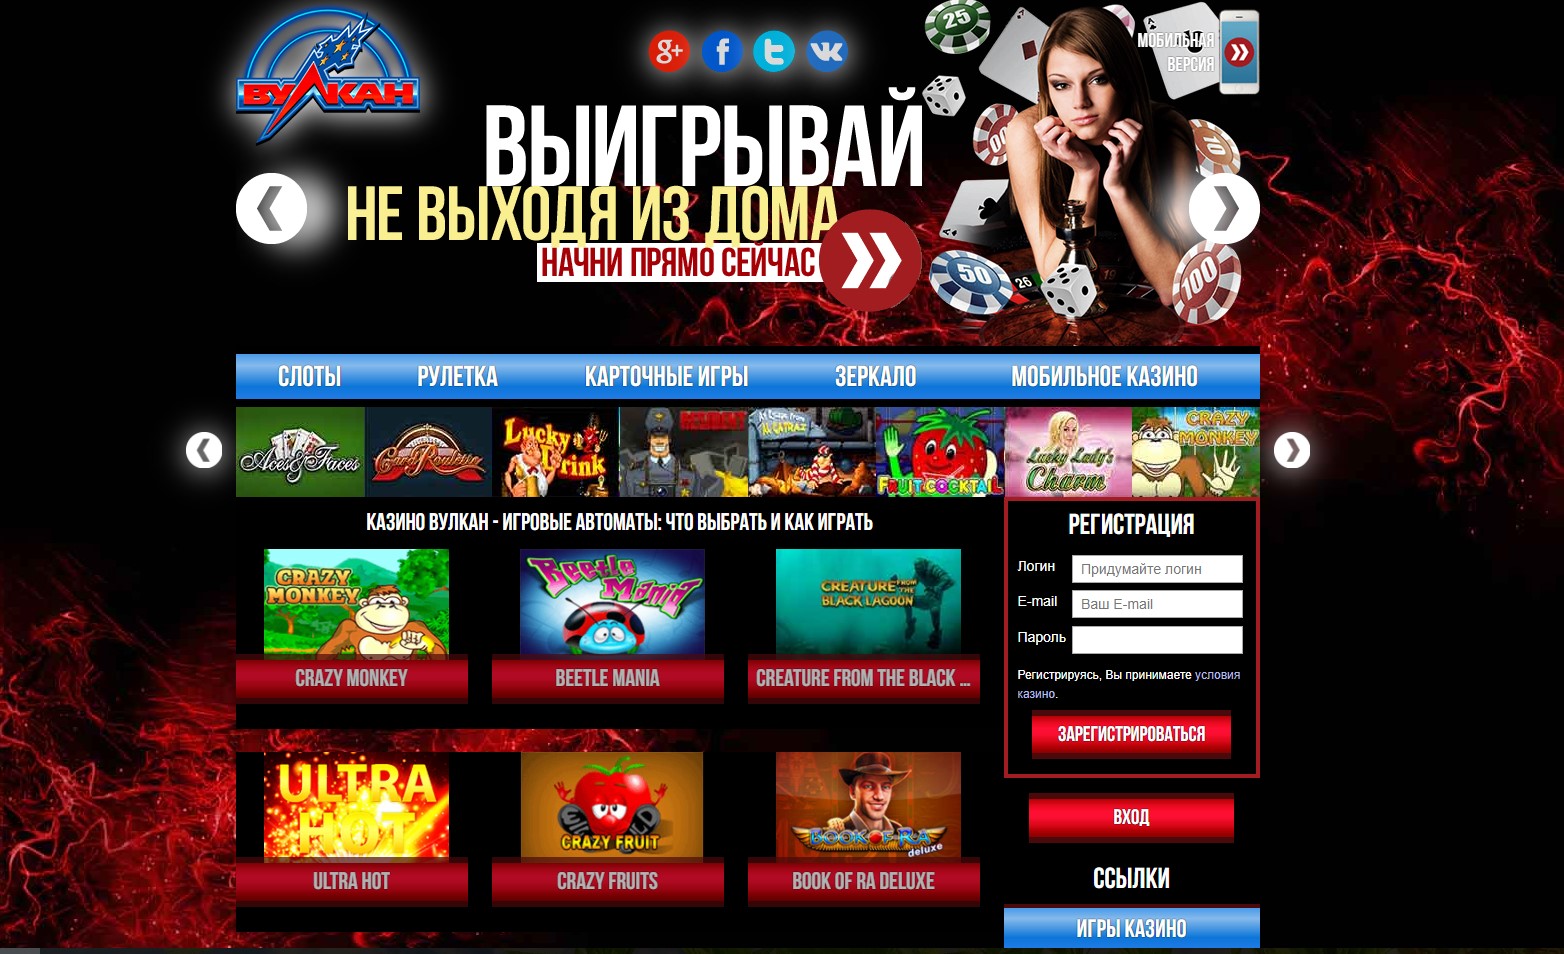 Заходи на vulcan-russia-casino.com и начинай играть в казино Вулкан Россия!